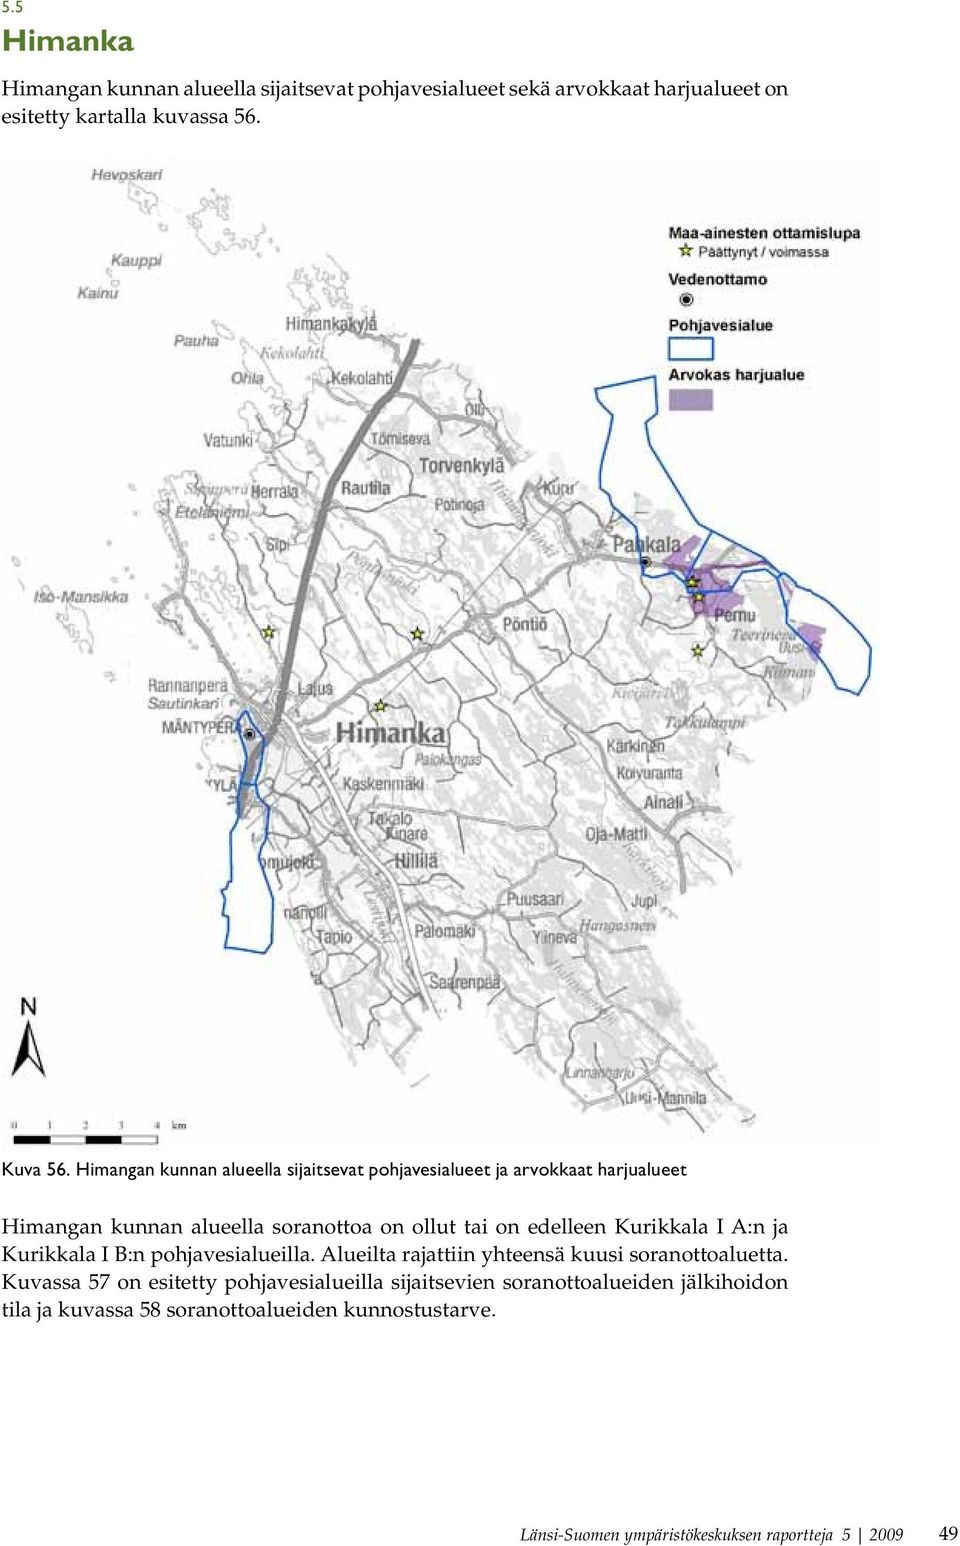 Kurikkala I A:n ja Kurikkala I B:n pohjavesialueilla. Alueilta rajattiin yhteensä kuusi soranottoaluetta.